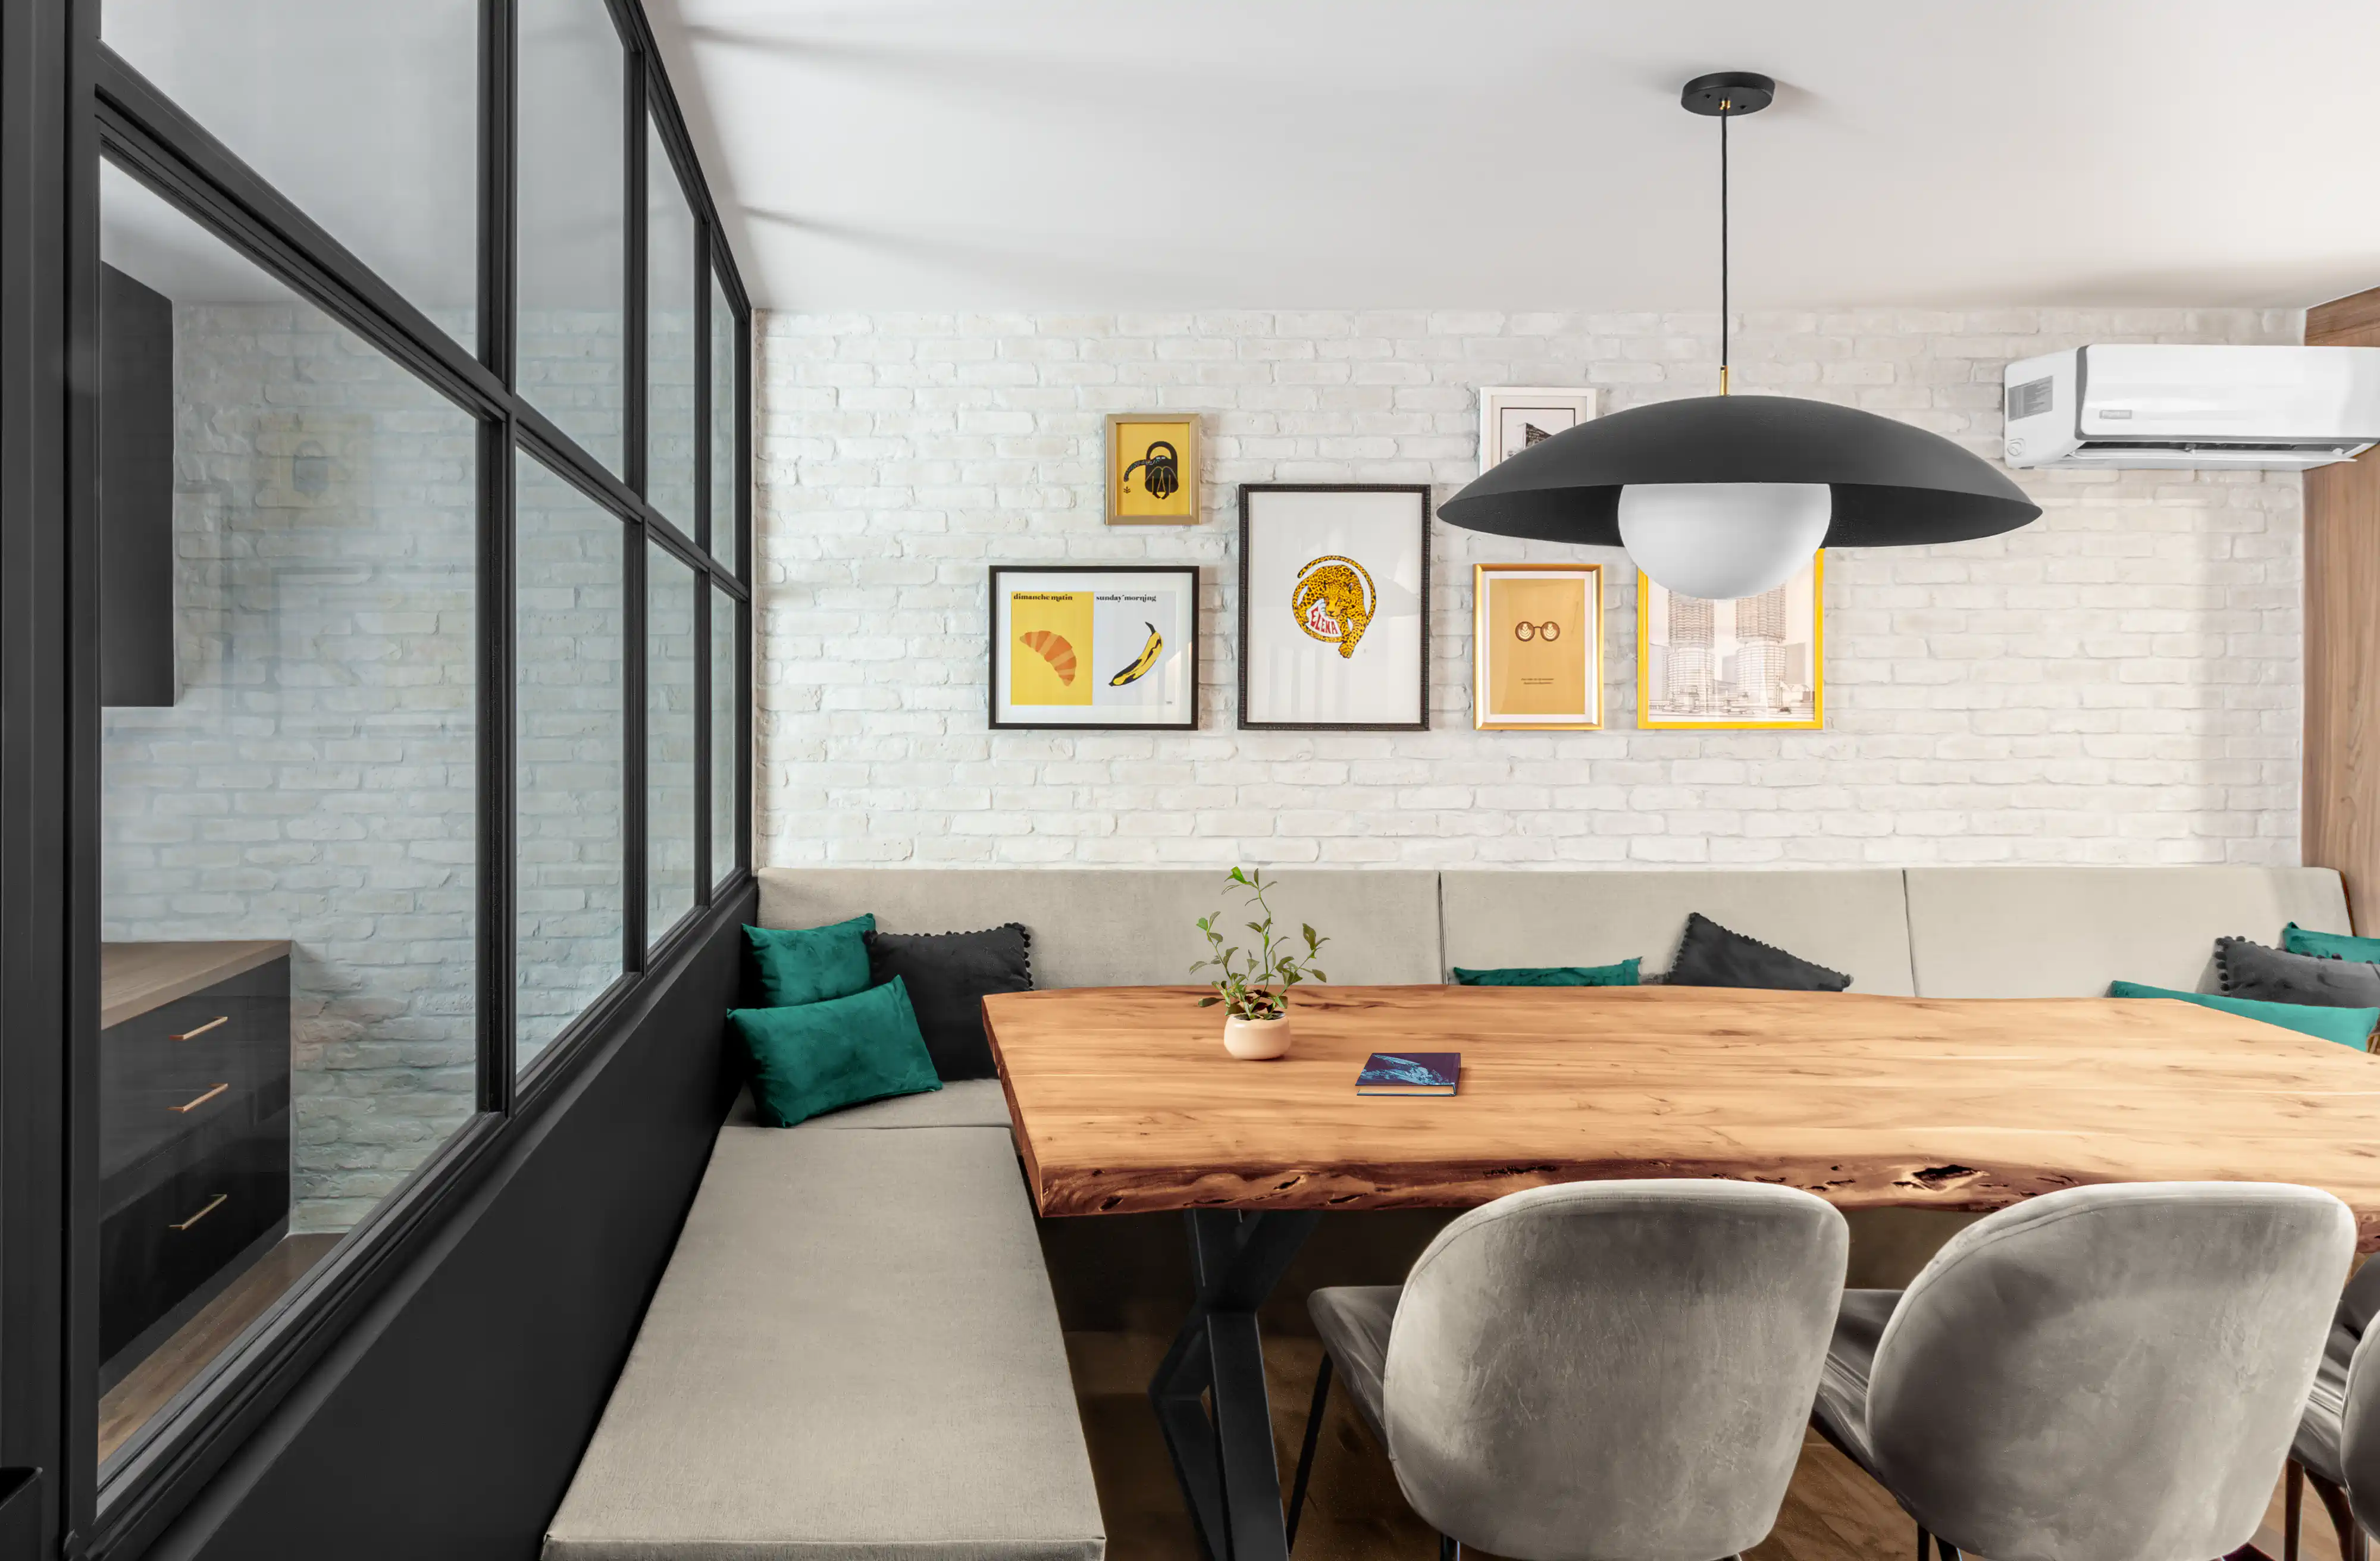 Salle à manger minimaliste avec un mur en briques apparentes, de l'art moderne et une table en bois avec des sièges variés, intérieur signé Sarah Brown Design